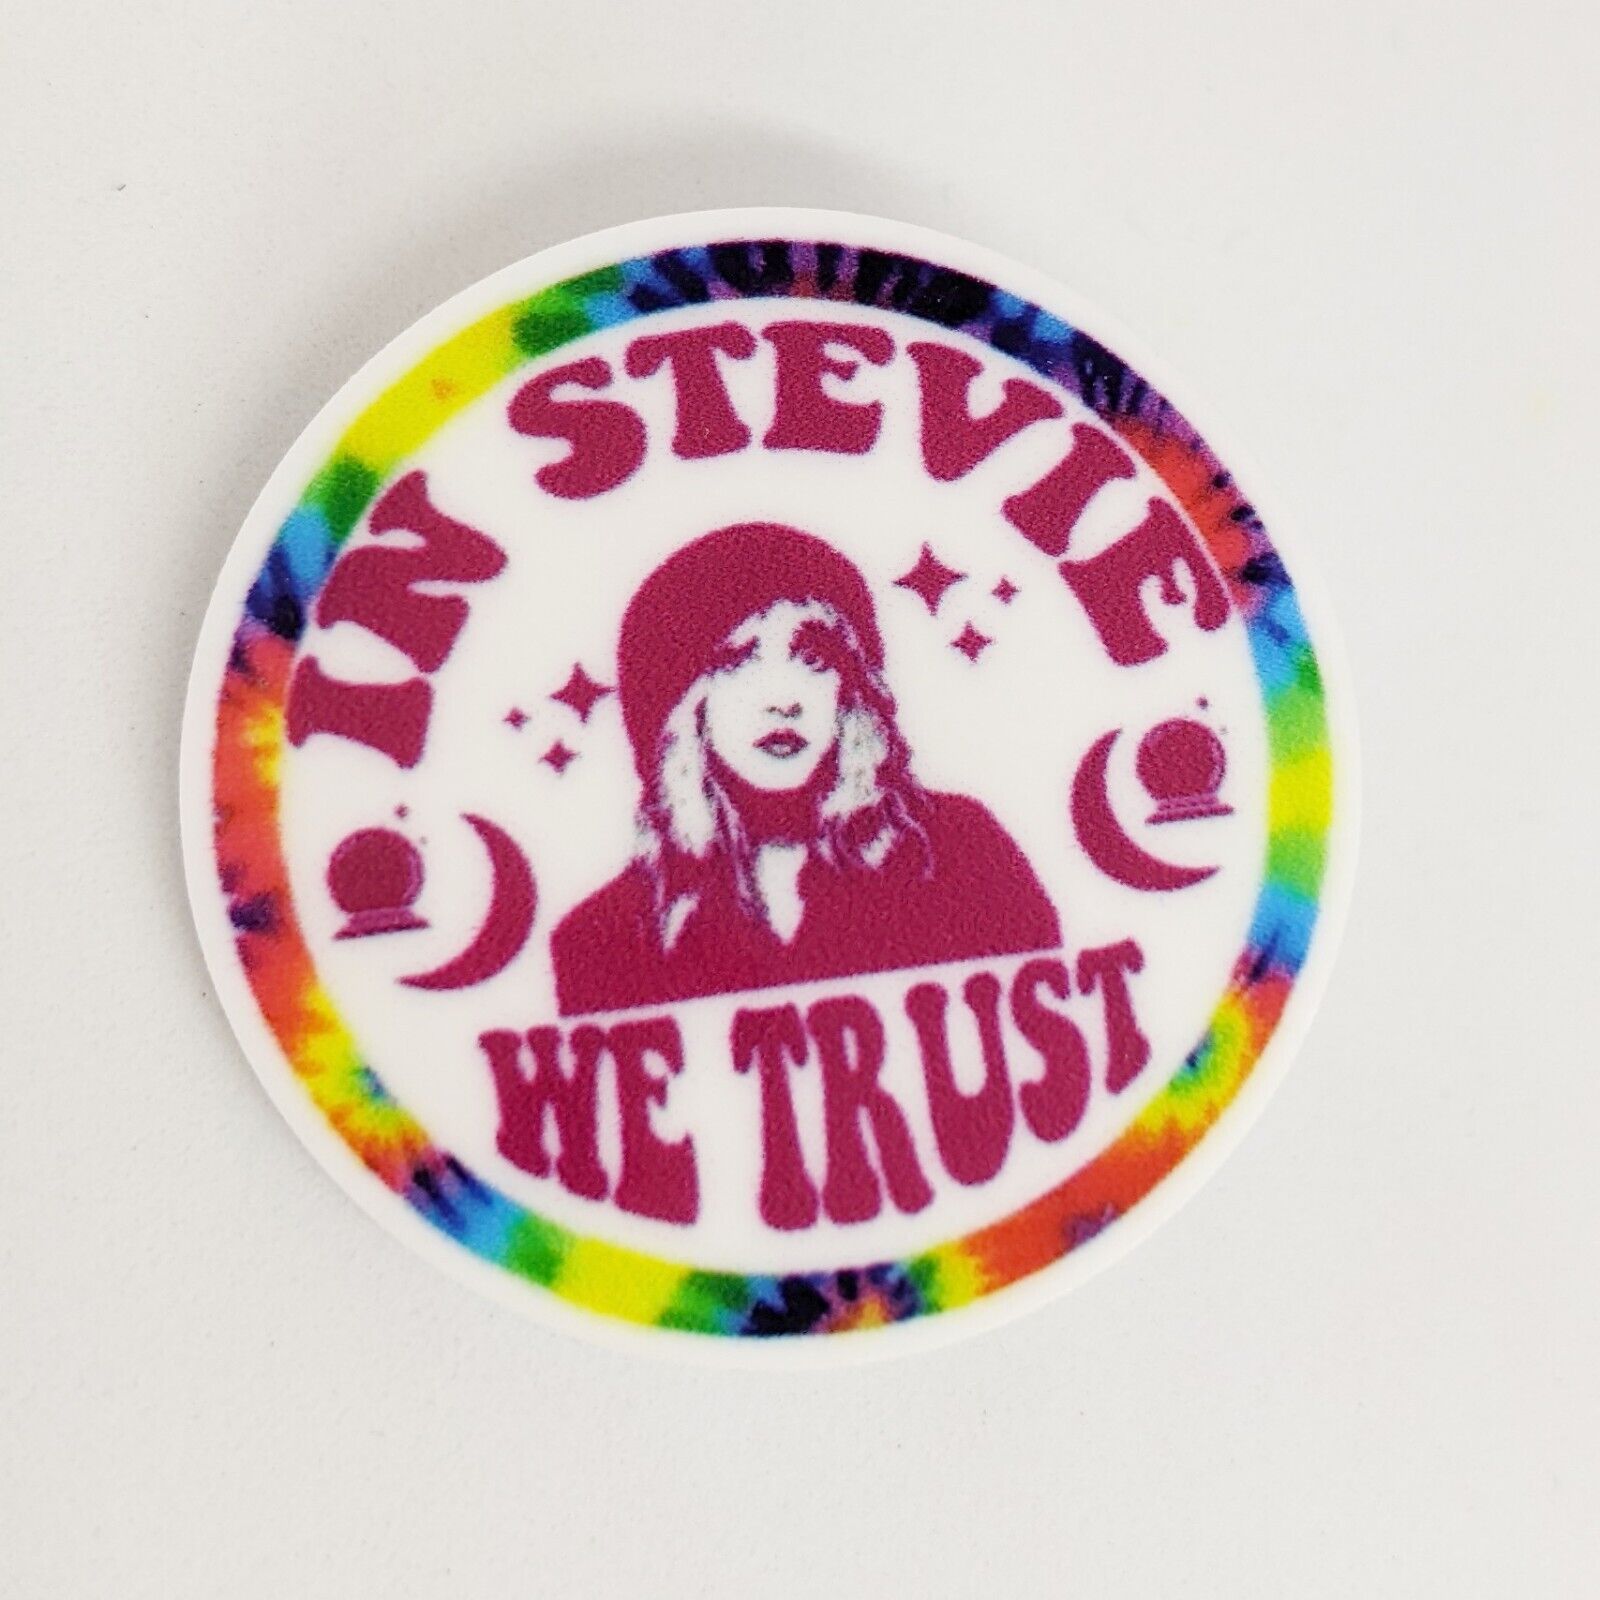 Stevie Nicks Acrylic Pin Badge Brooch Pinback Rock Music New In Stevie We Trust